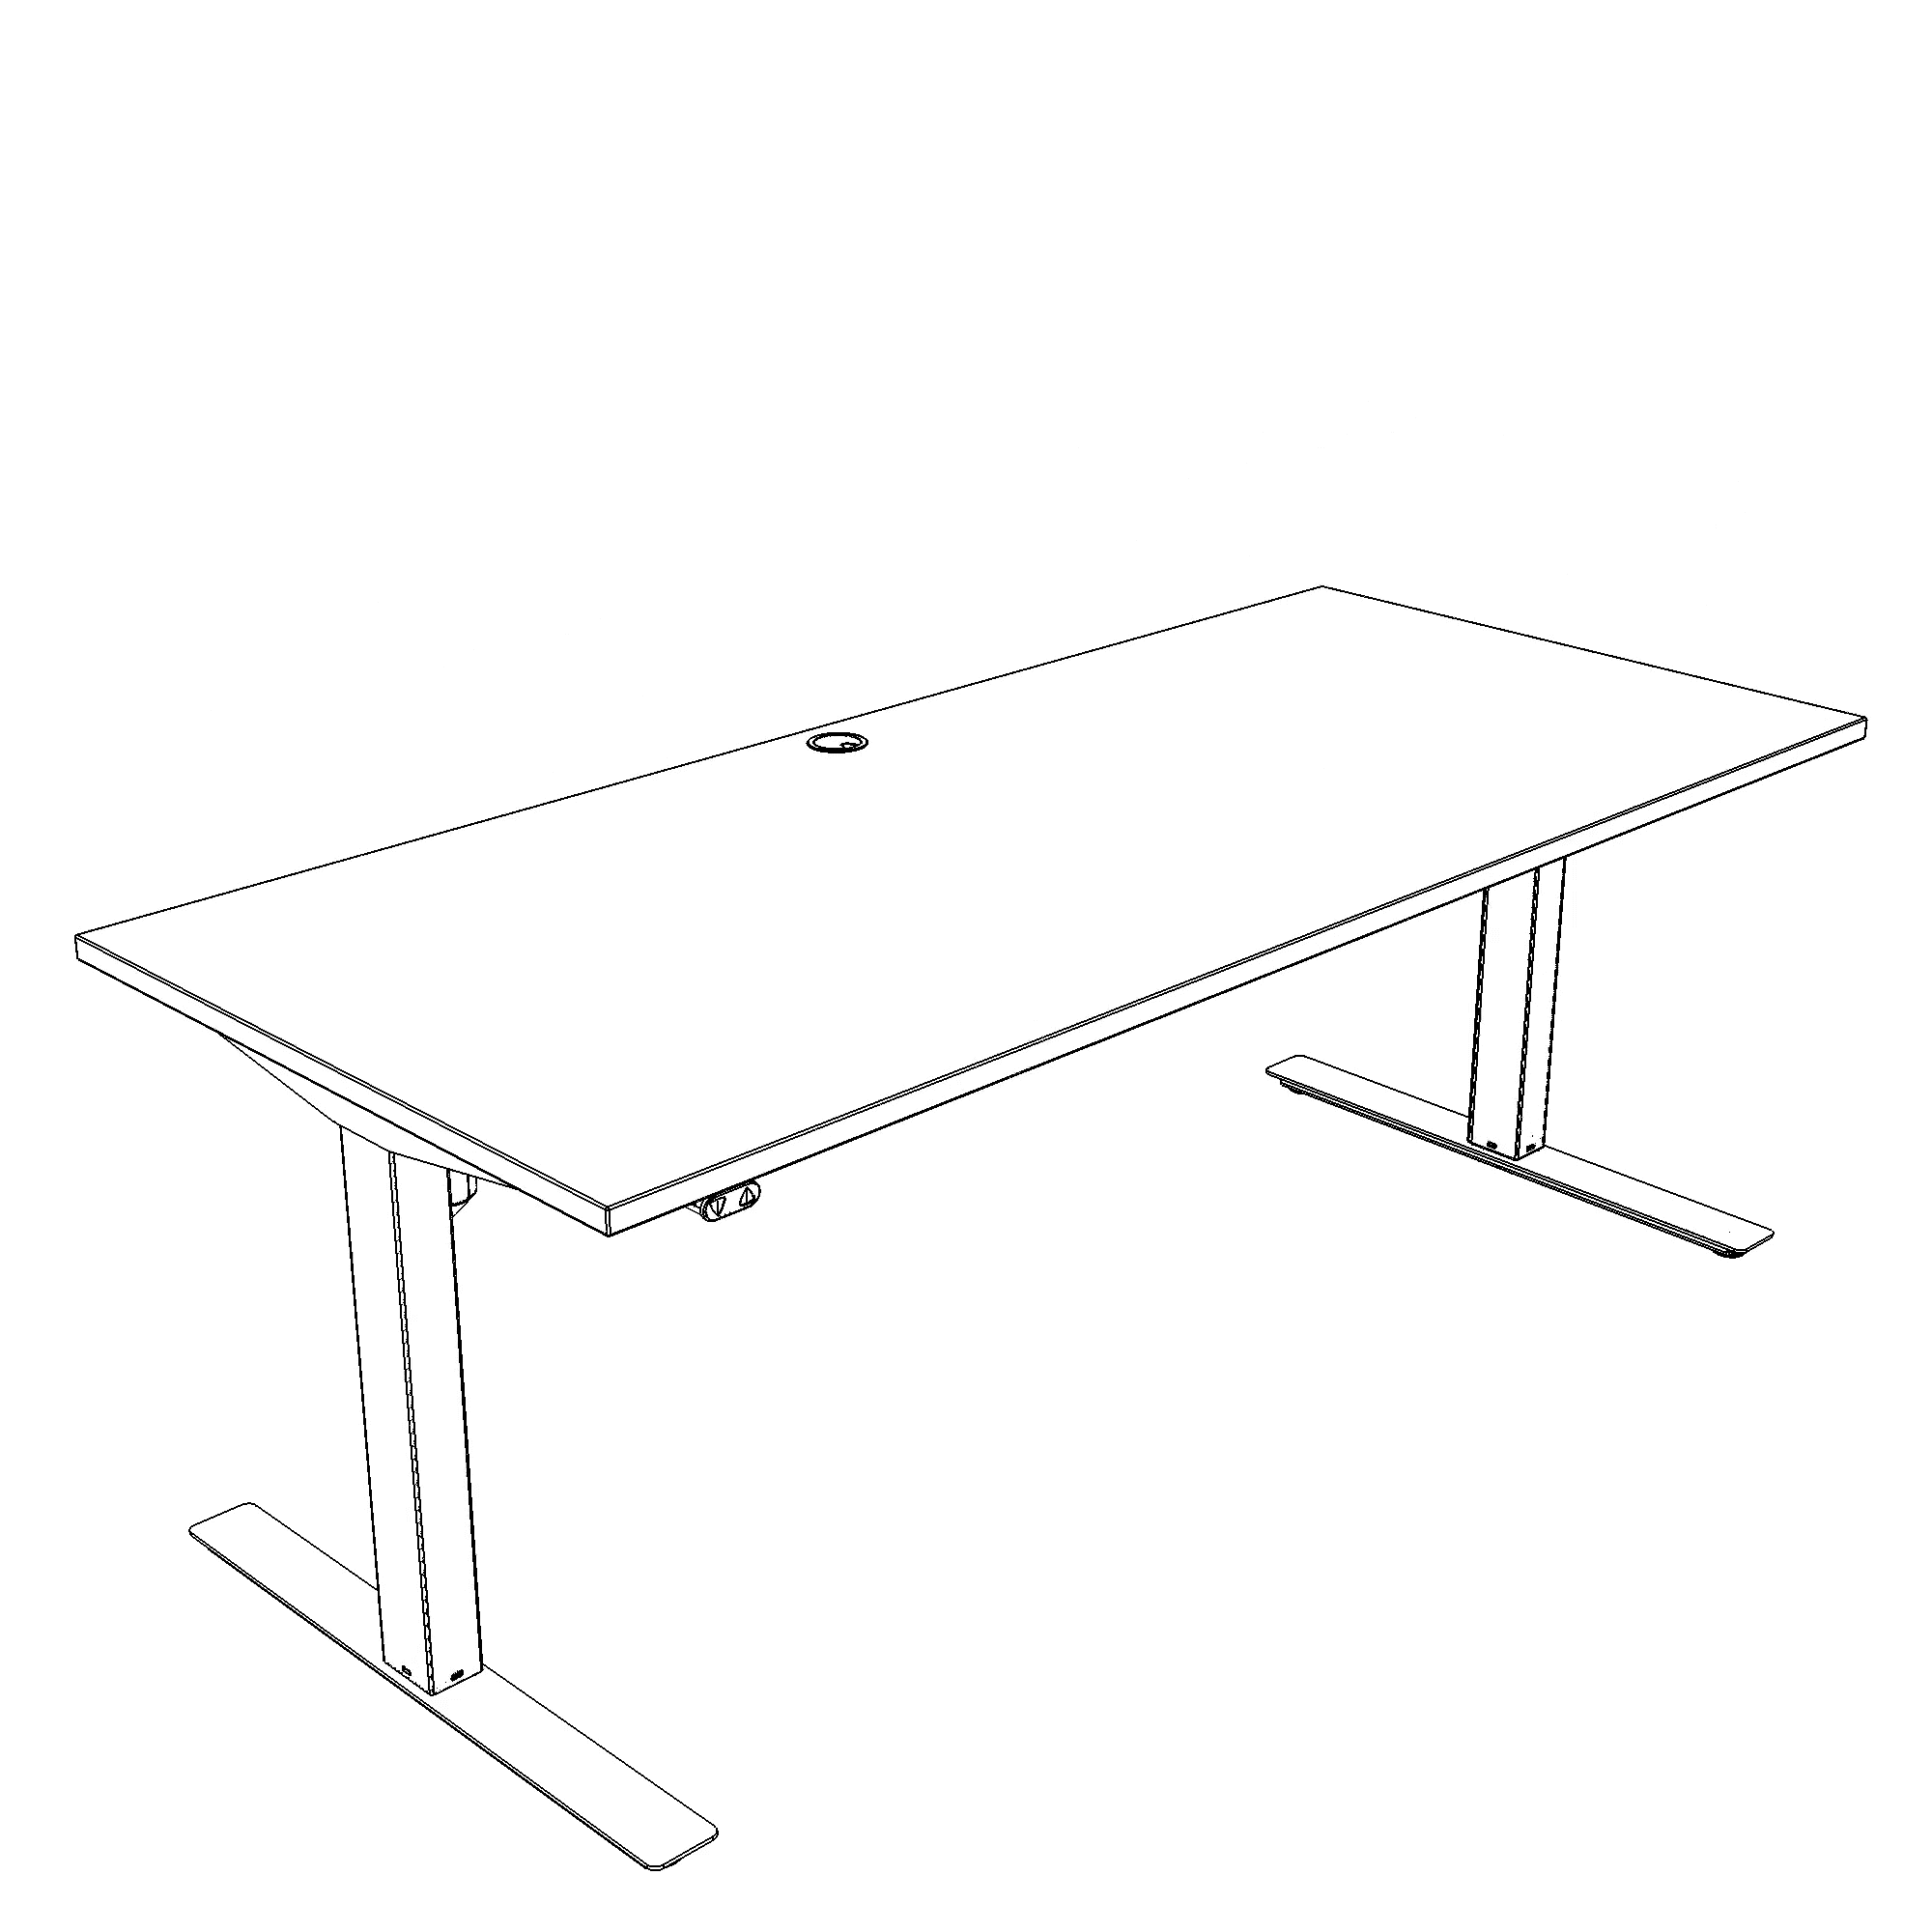 Electric Adjustable Desk | 160x80 cm | Walnut with black frame